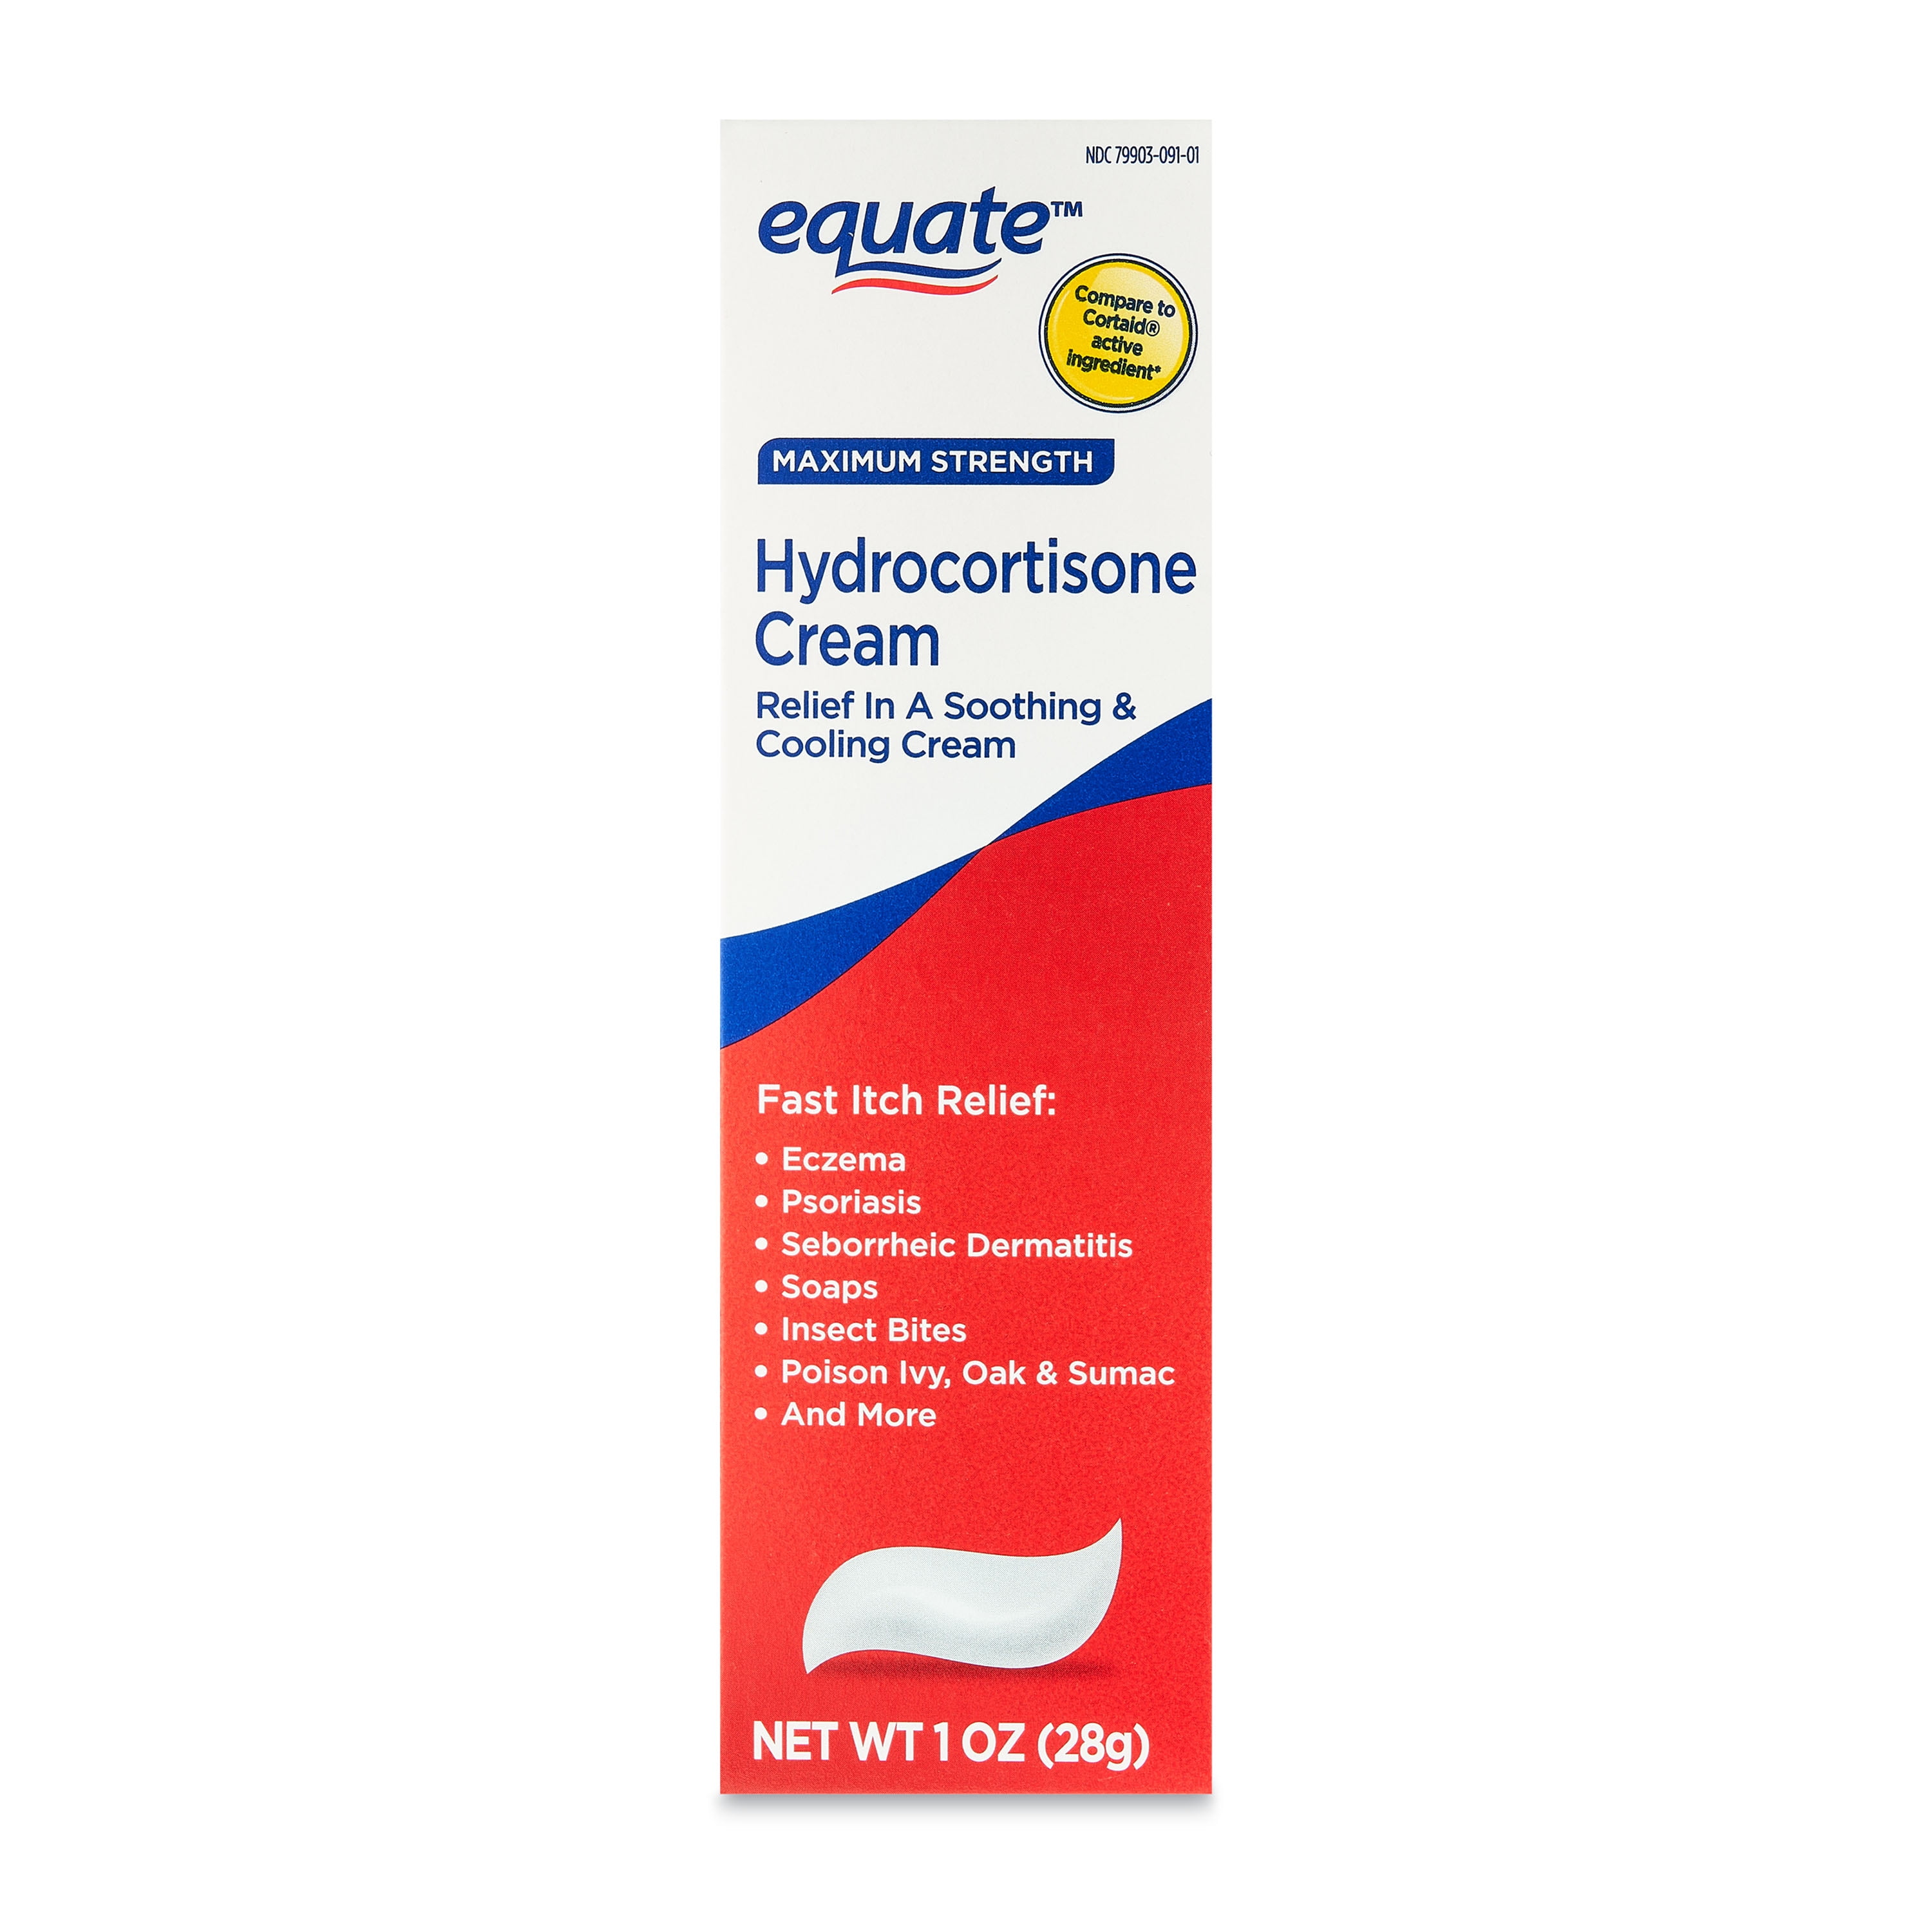 Equate Hydrocortisone Cream, 1 oz